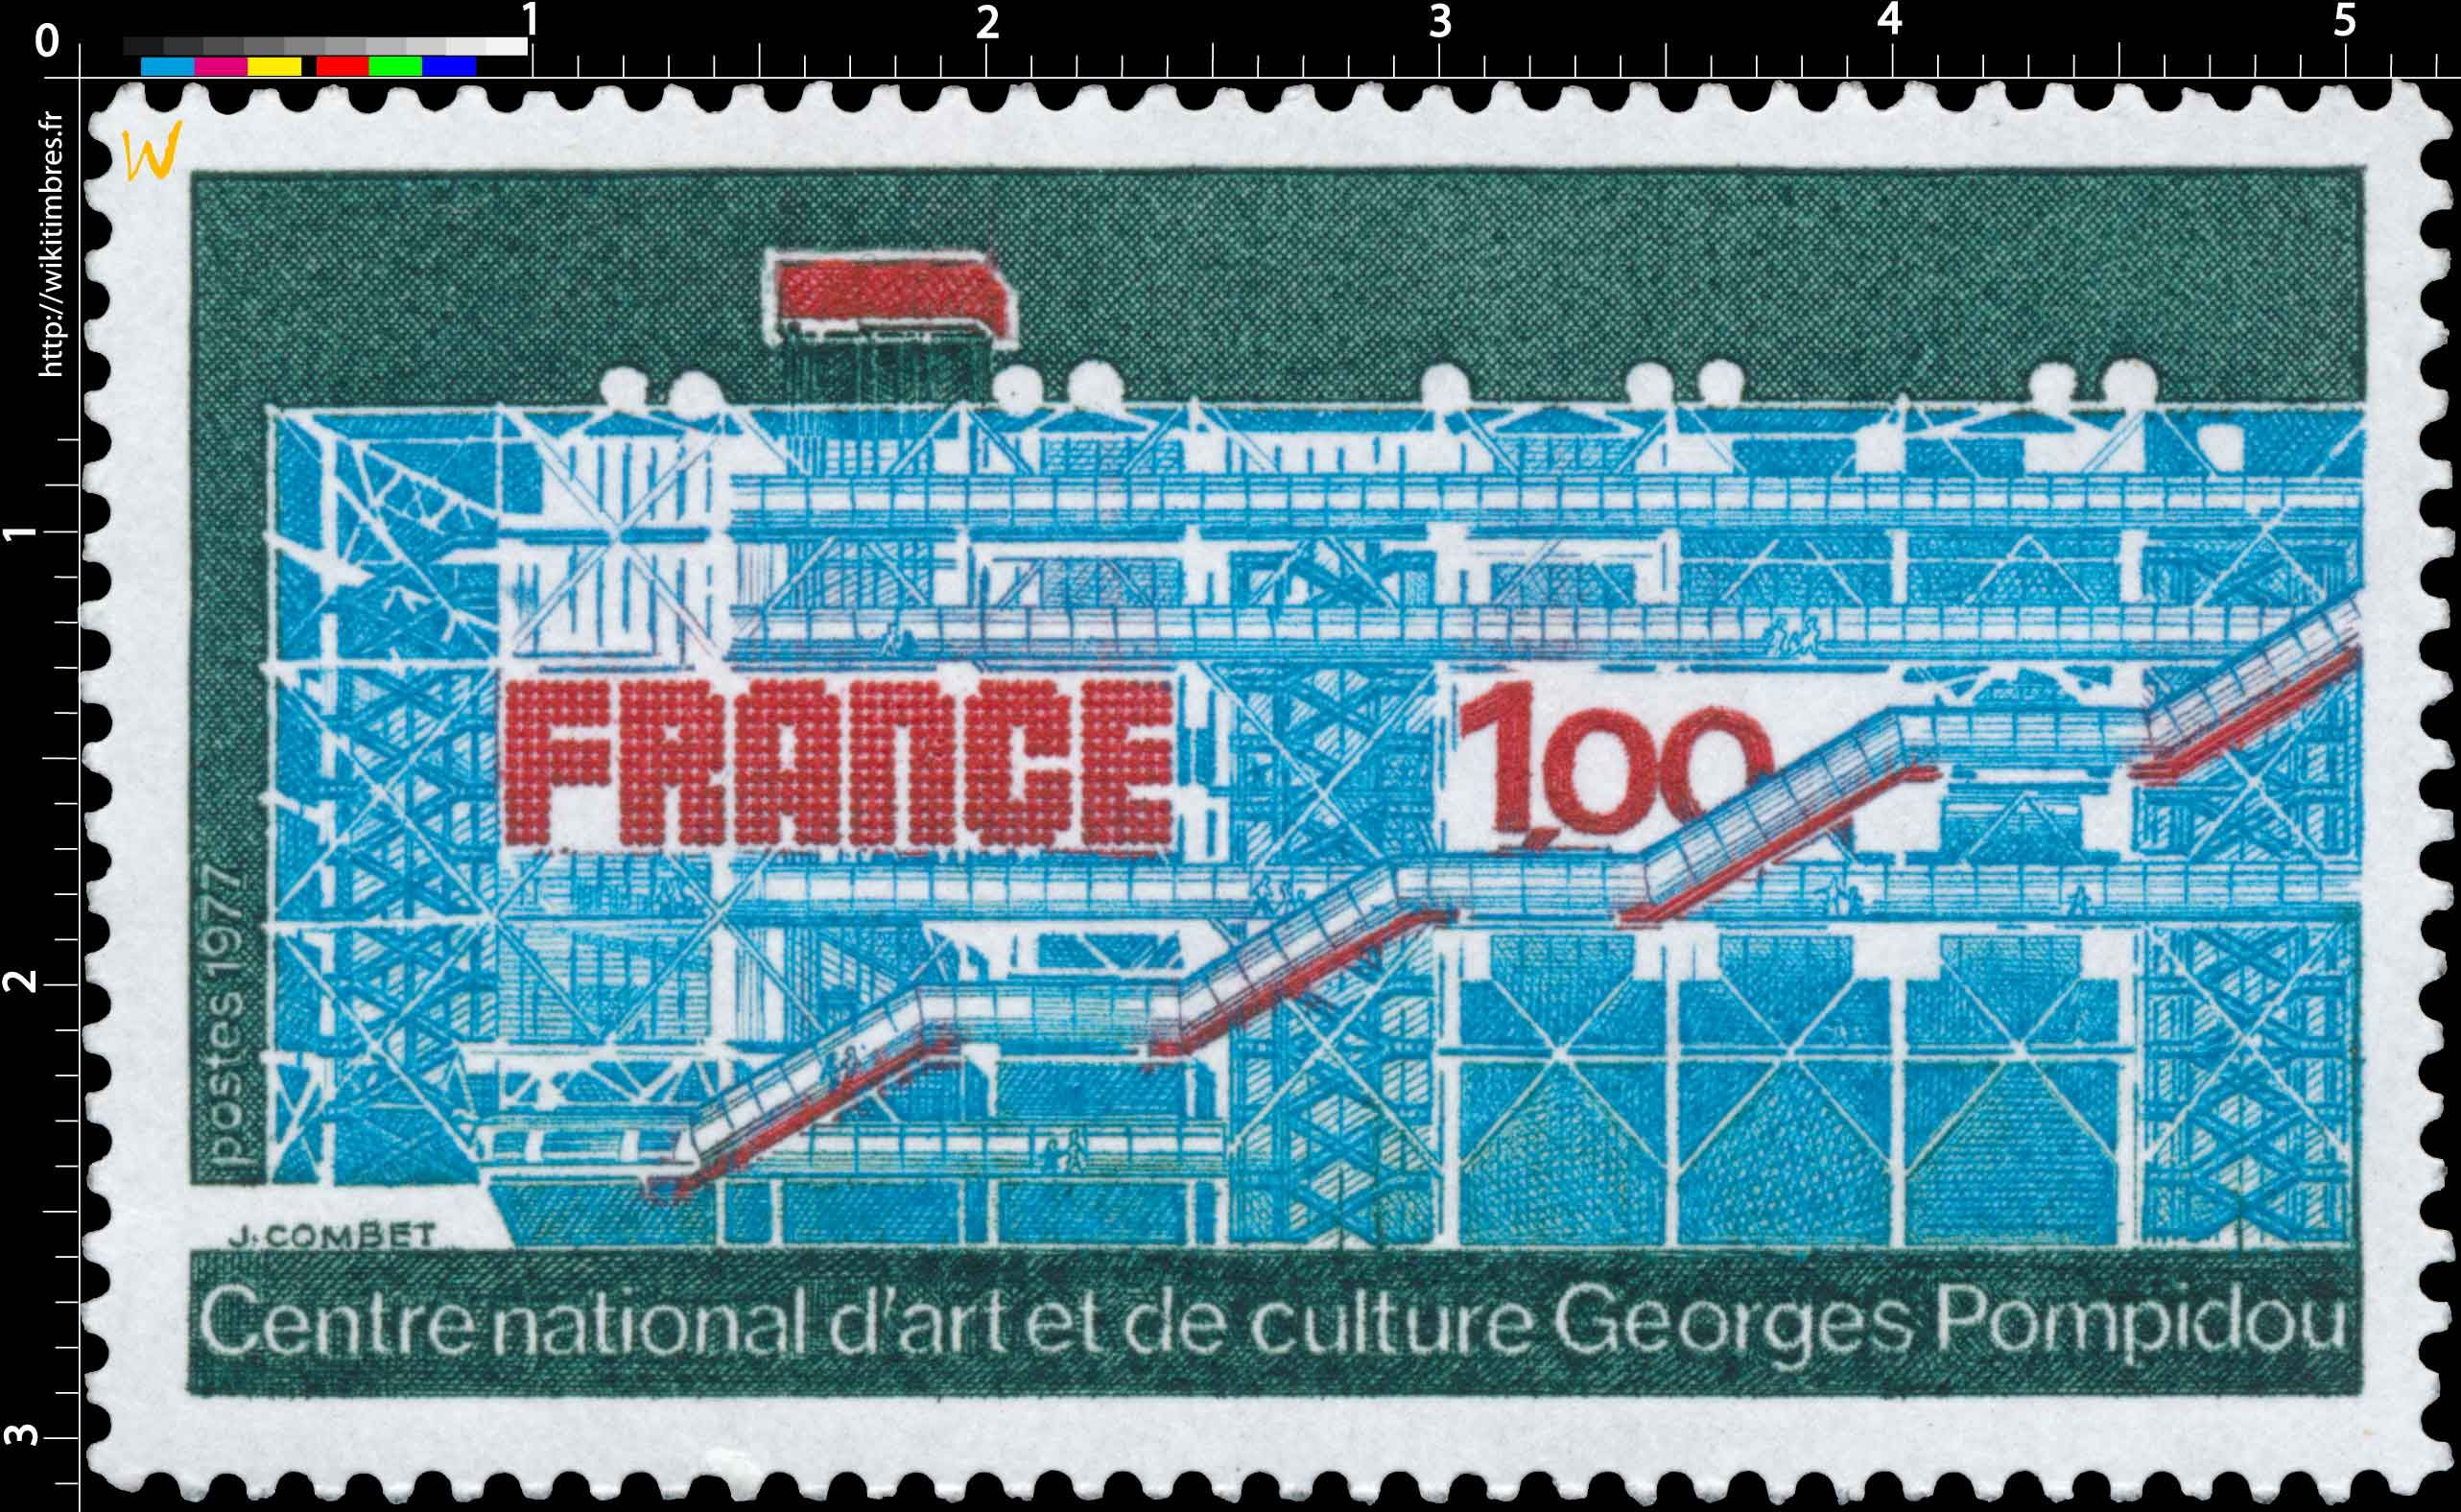 1977 Centre national d'art et de culture Georges Pompidou